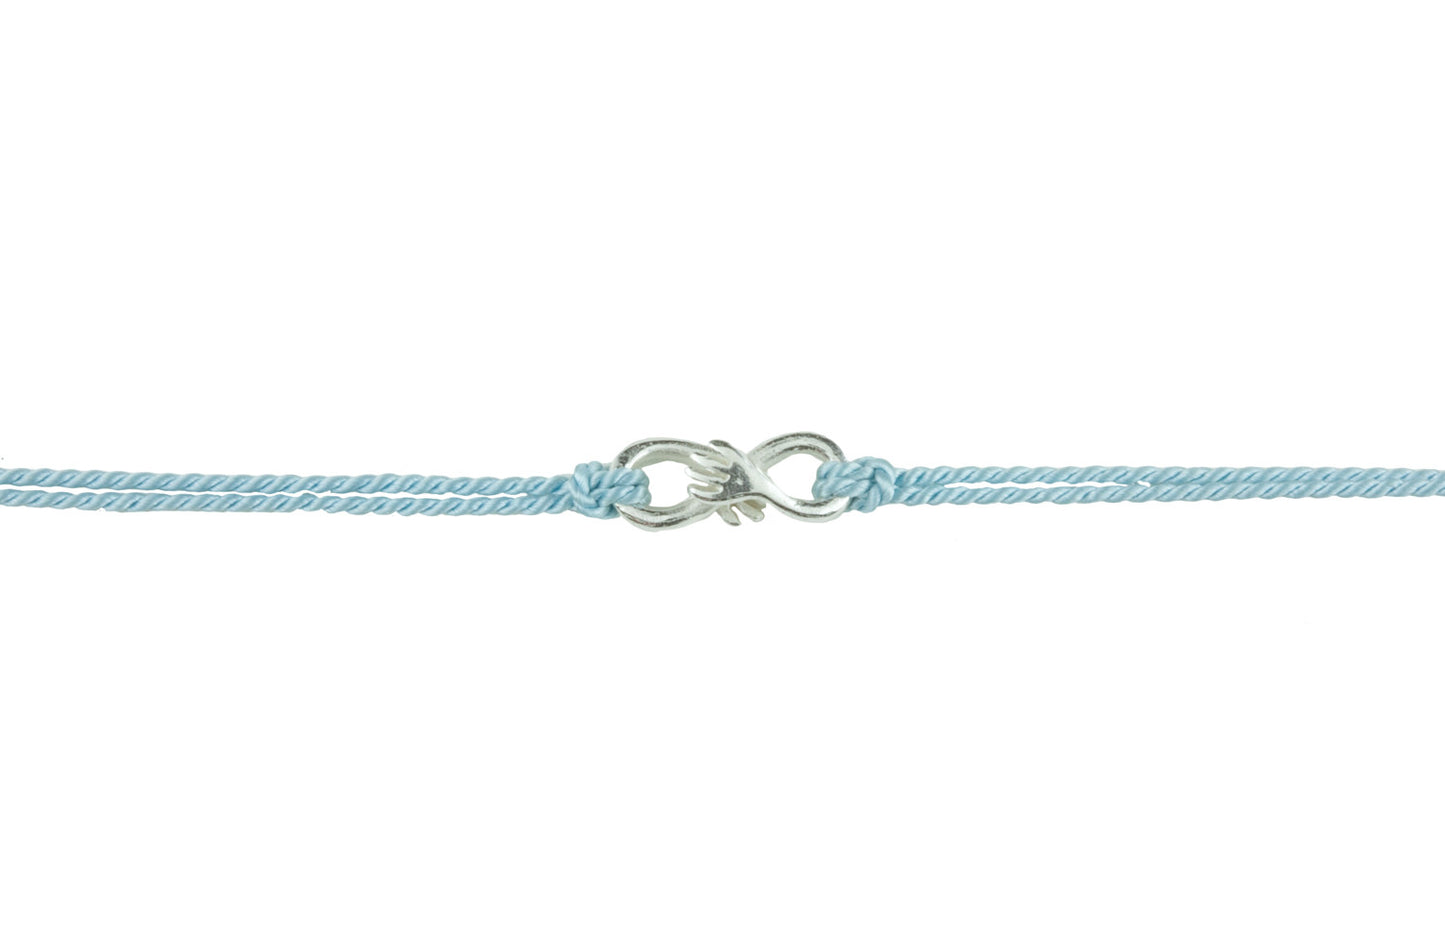 Cuddle charm on Baby blue silk thread